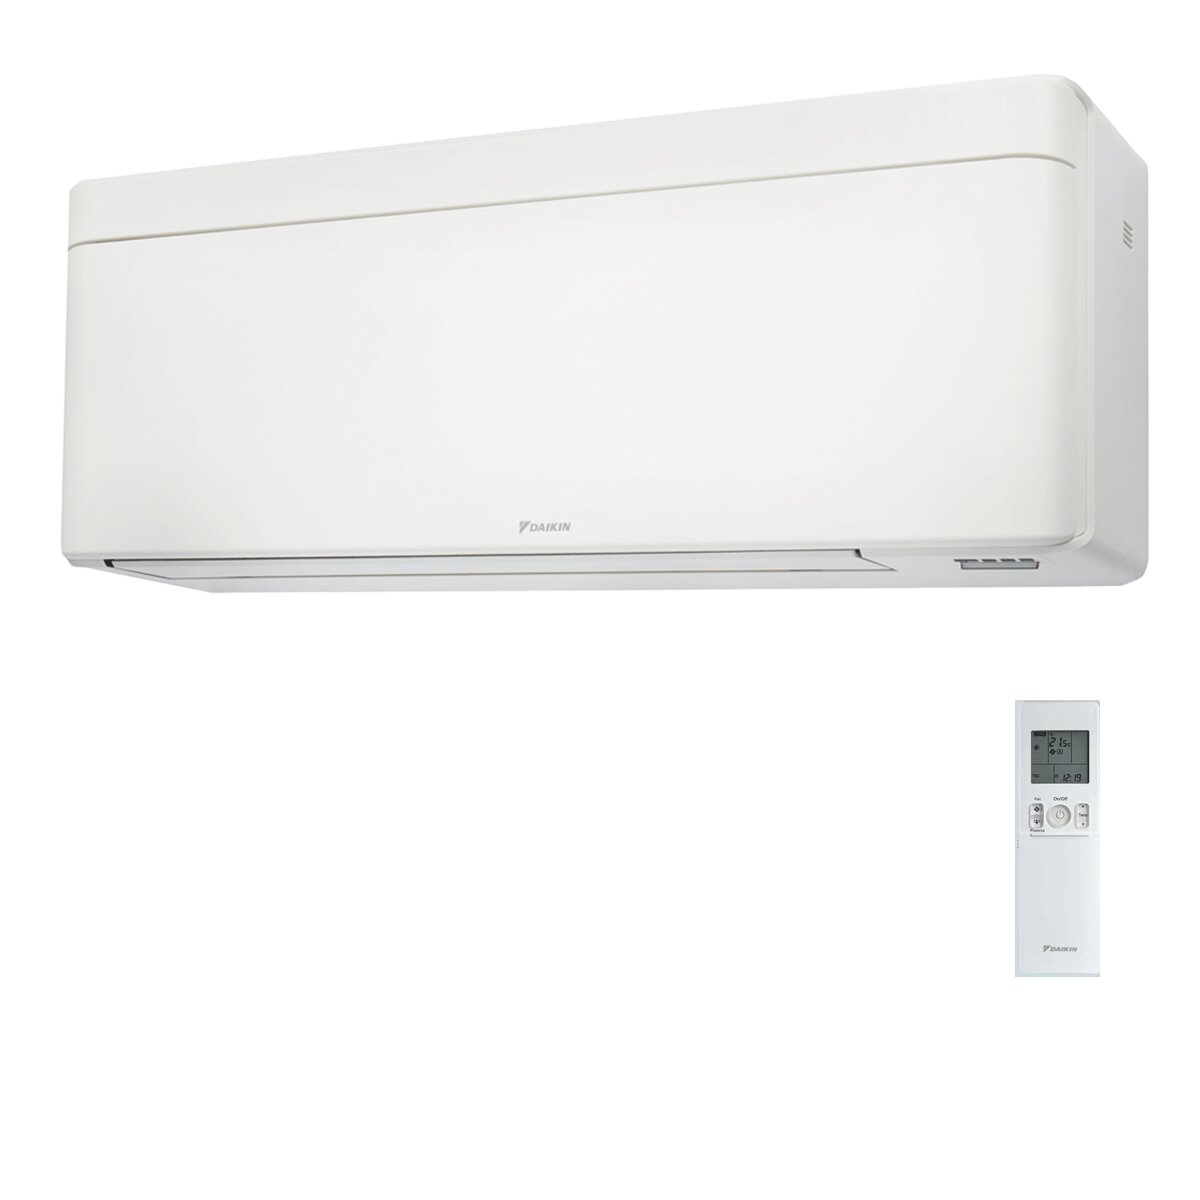 Daikin Stylish Klimaanlage Weiß 12000 BTU Inverter A+++ WiFi R32